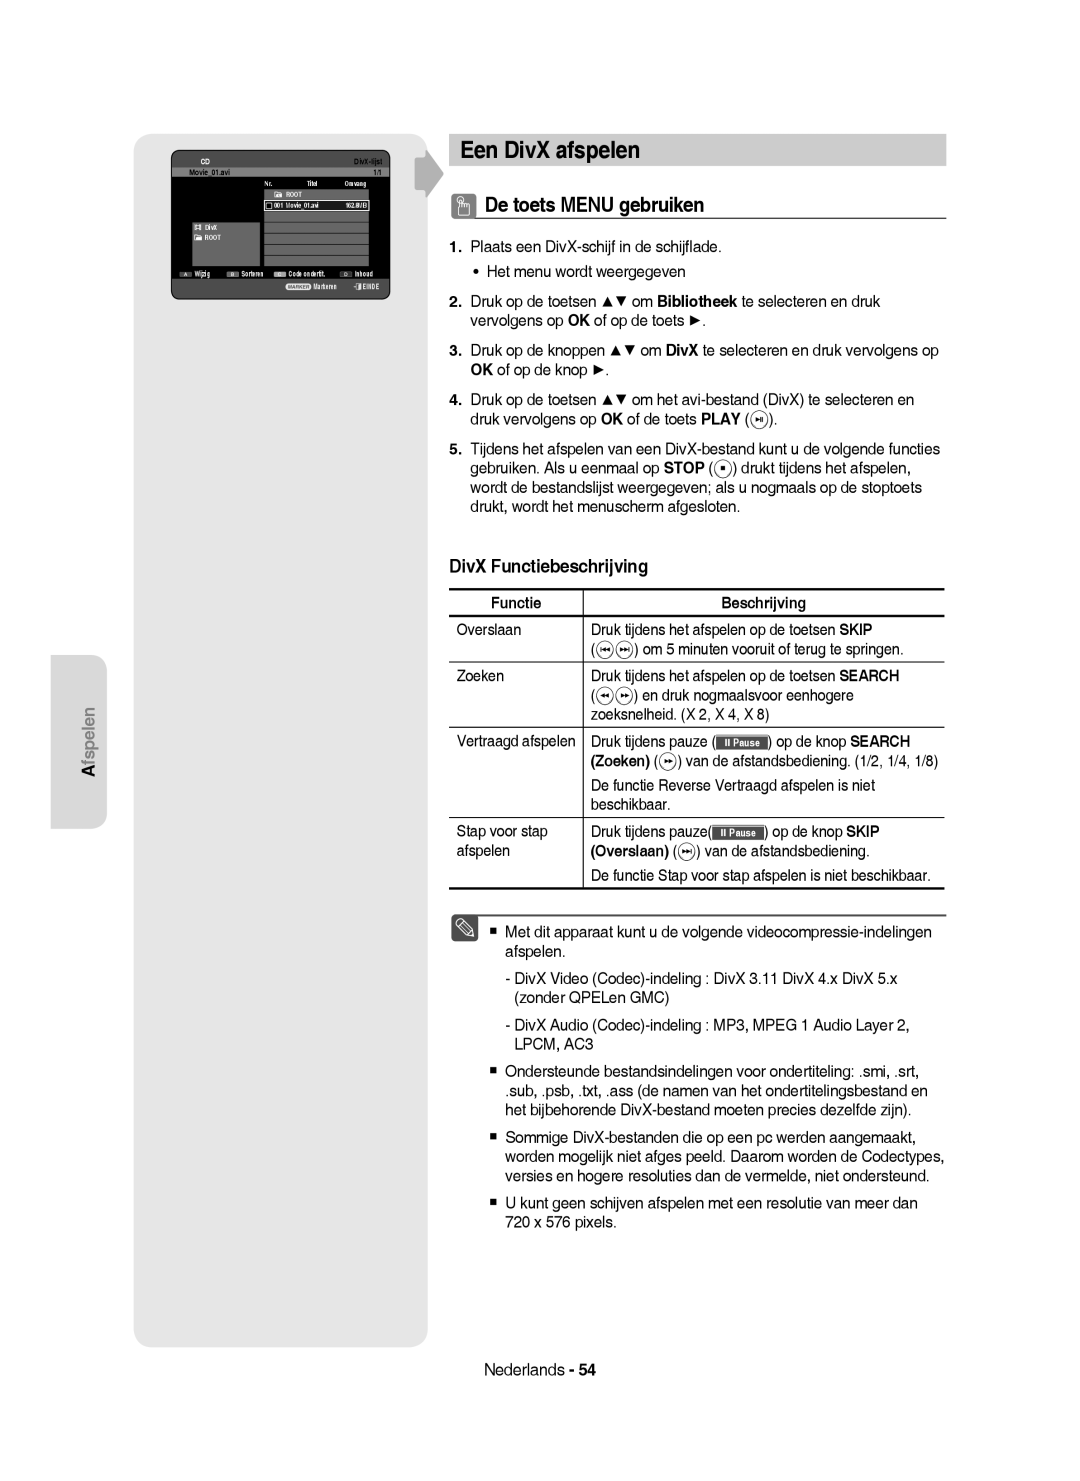 Samsung DVD-HR750/AUS Een DivX afspelen, De toets Menu gebruiken, DivX Functiebeschrijving, Functie Beschrijving, Zoeken 